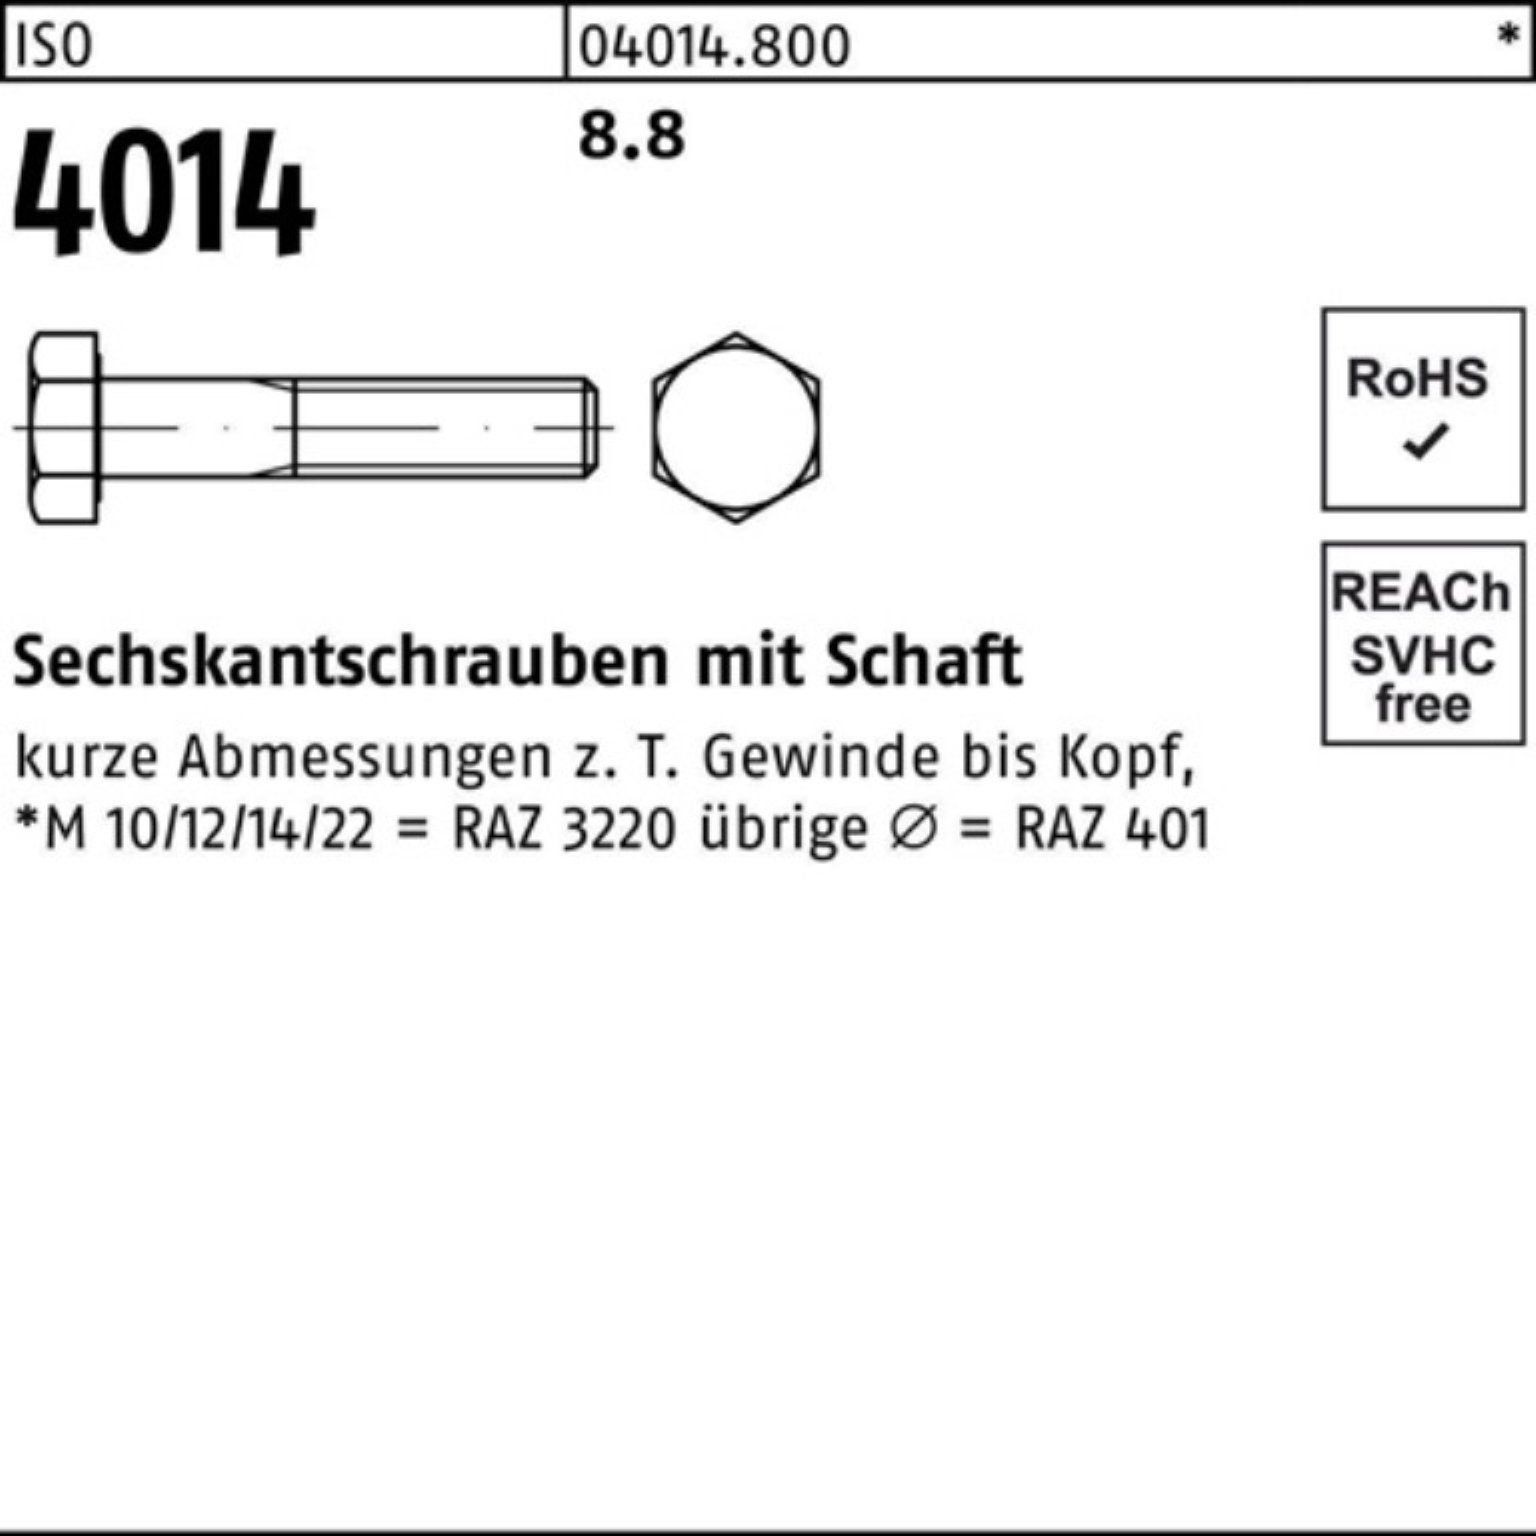 Bufab Sechskantschraube 100er Pack 1 4014 ISO 170 8.8 ISO Schaft M24x Sechskantschraube Stück